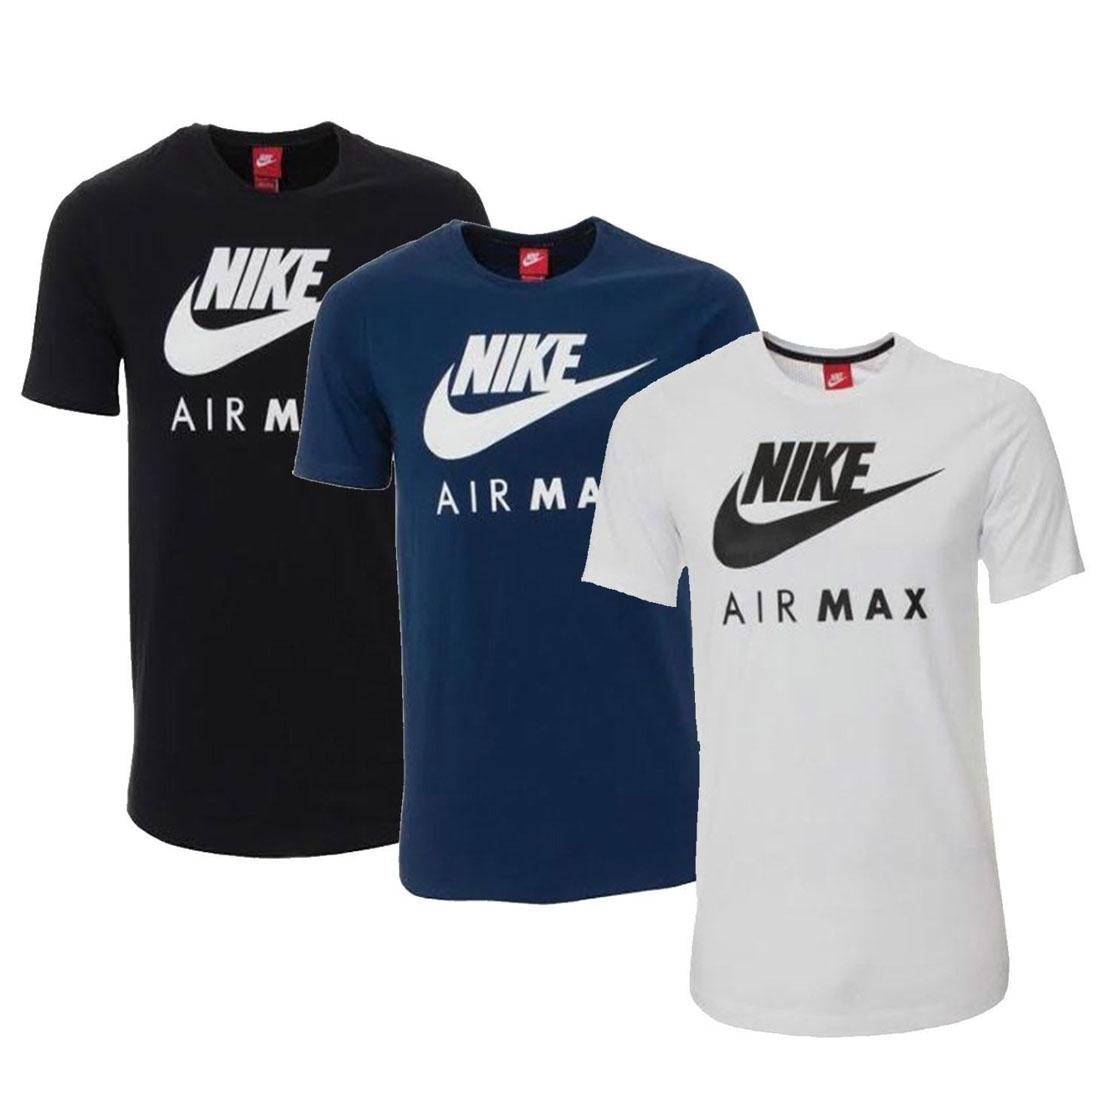 nike air max t shirt white